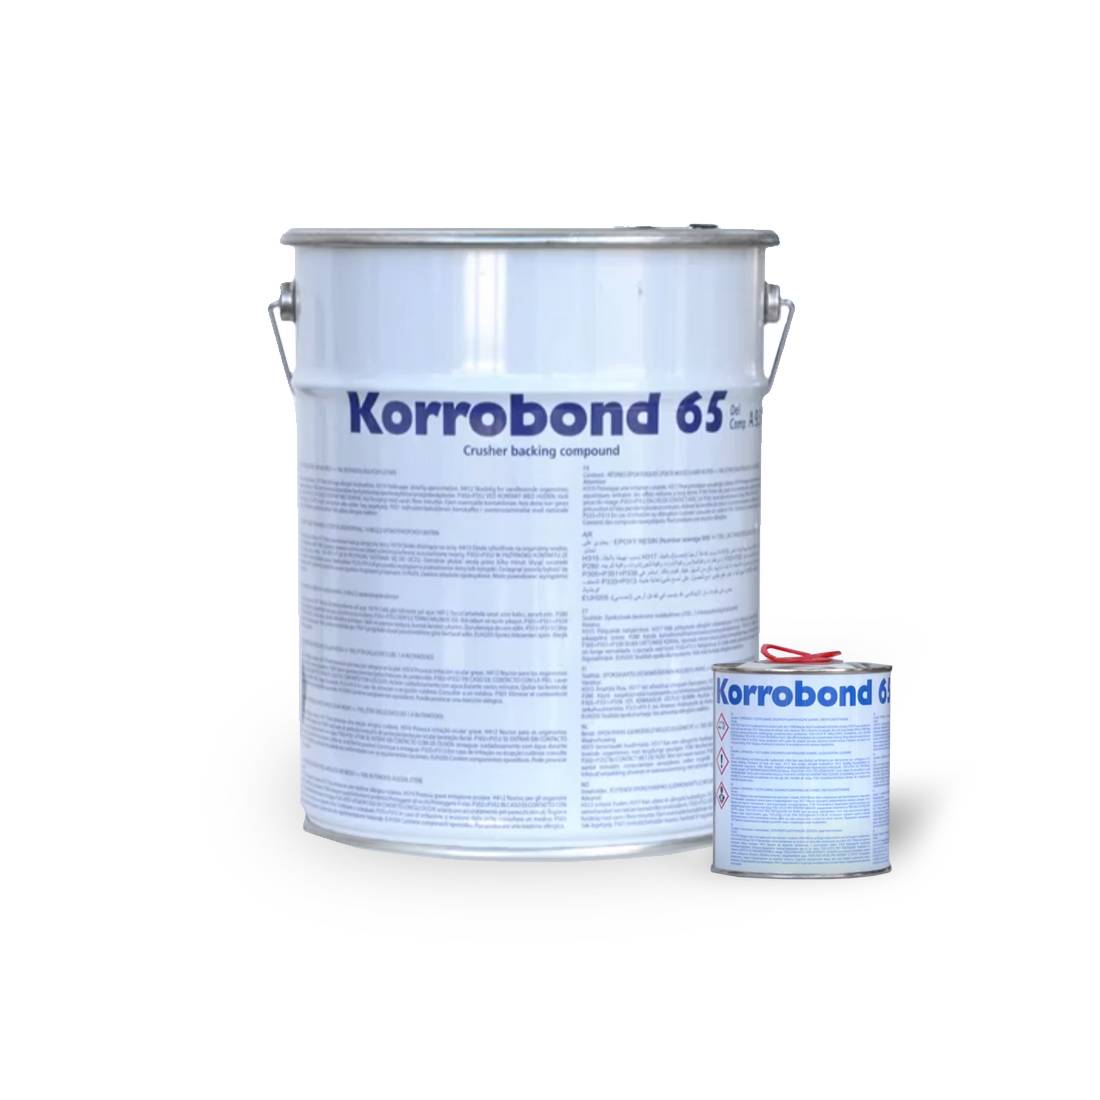 Korrobond 65, двухкомпонентный защитный компаунд и амортизирующий материал на основе эпоксидной смолы для камнедробилок